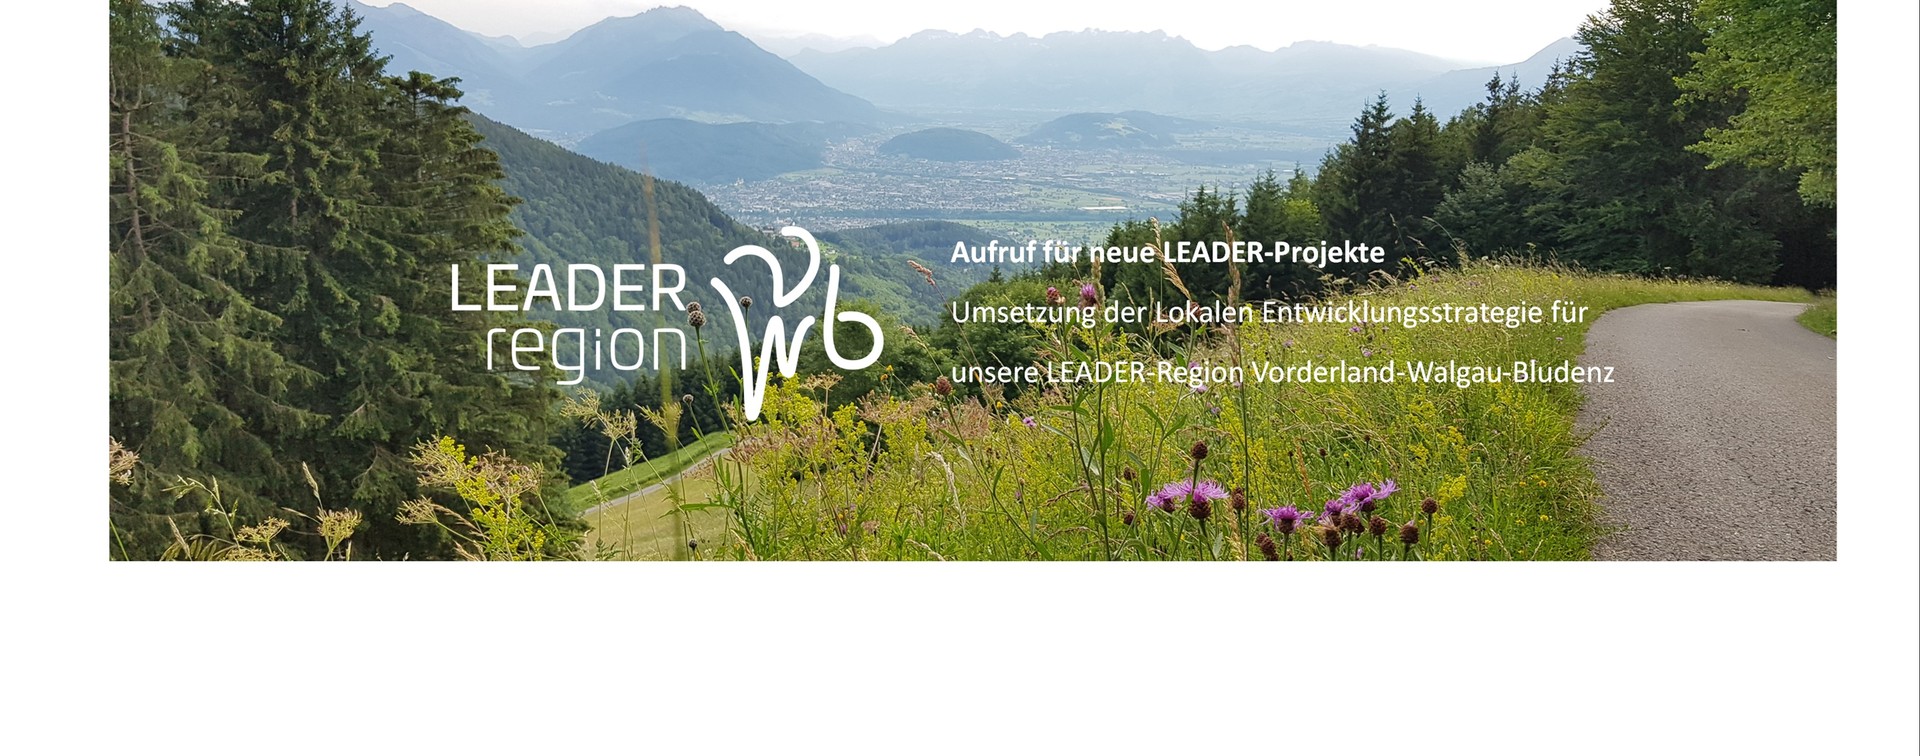 Einreichung von Projekten für die Umsetzung der Lokalen Entwicklungsstrategie (LES) 2023-2027 der LEADER-Region Vorderland-Walgau-Bludenz.